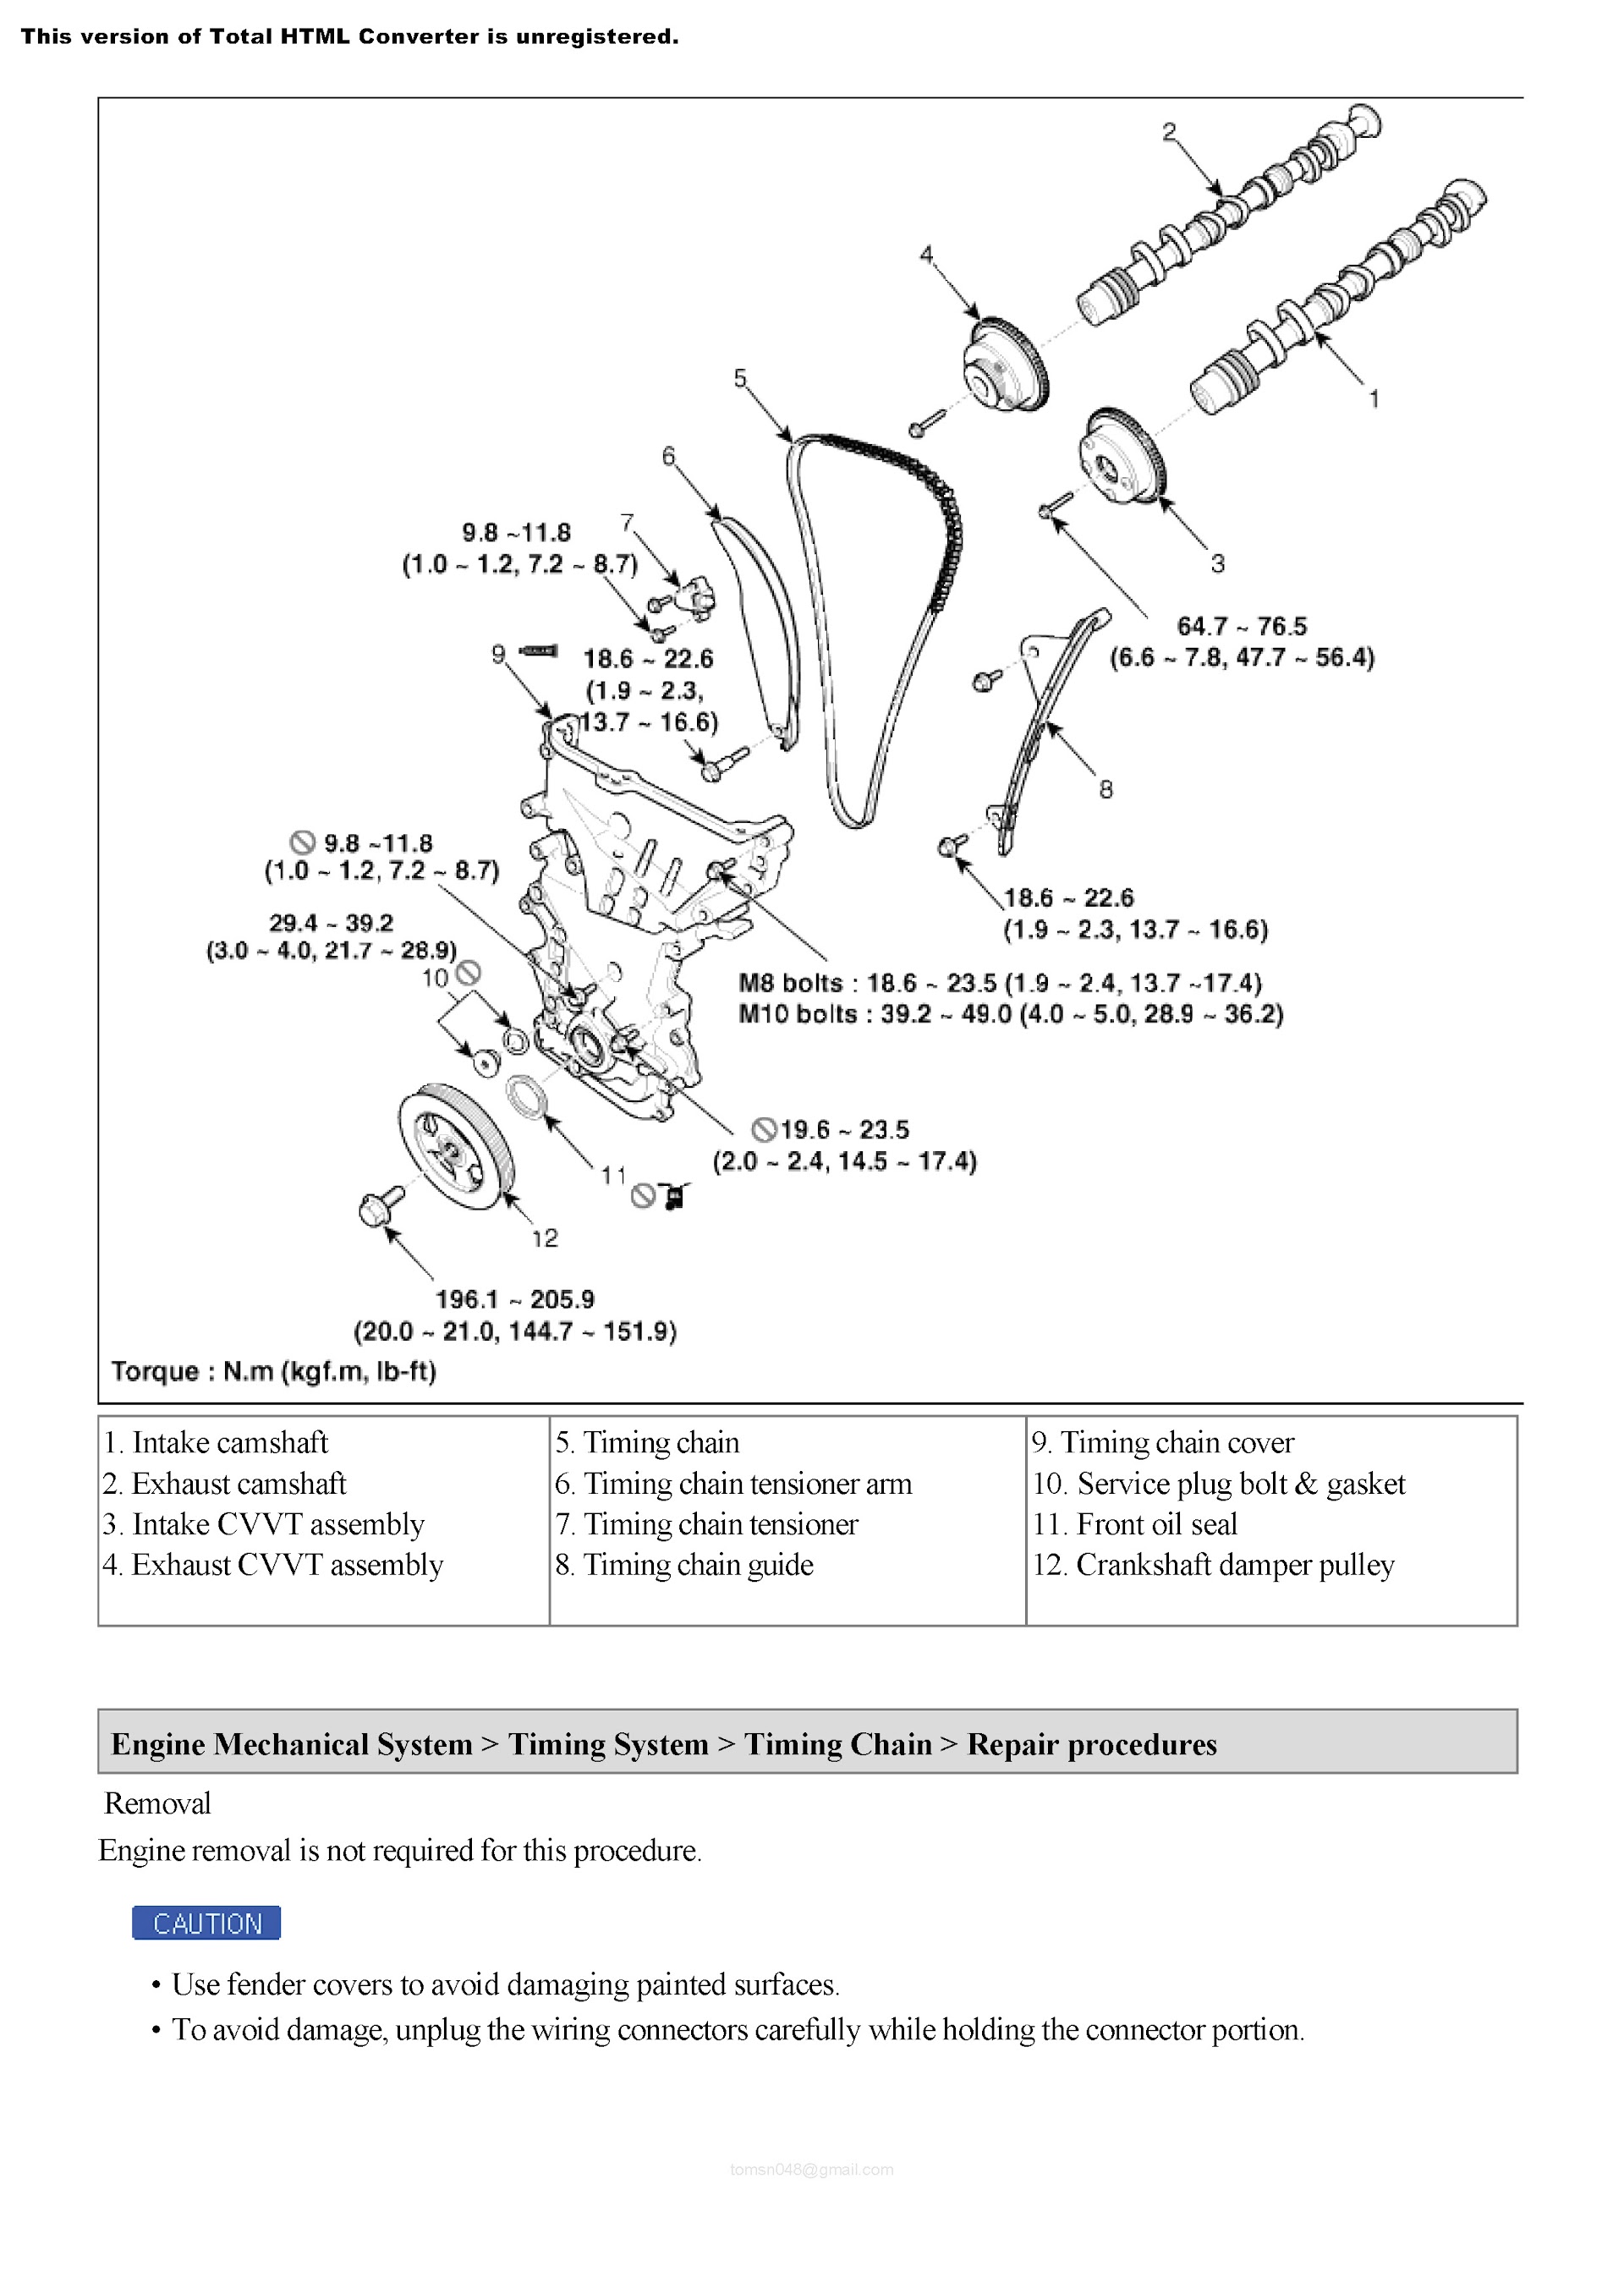 2013 Hyundai Elantra Repair Manual, Timing Chain Repair Procedures